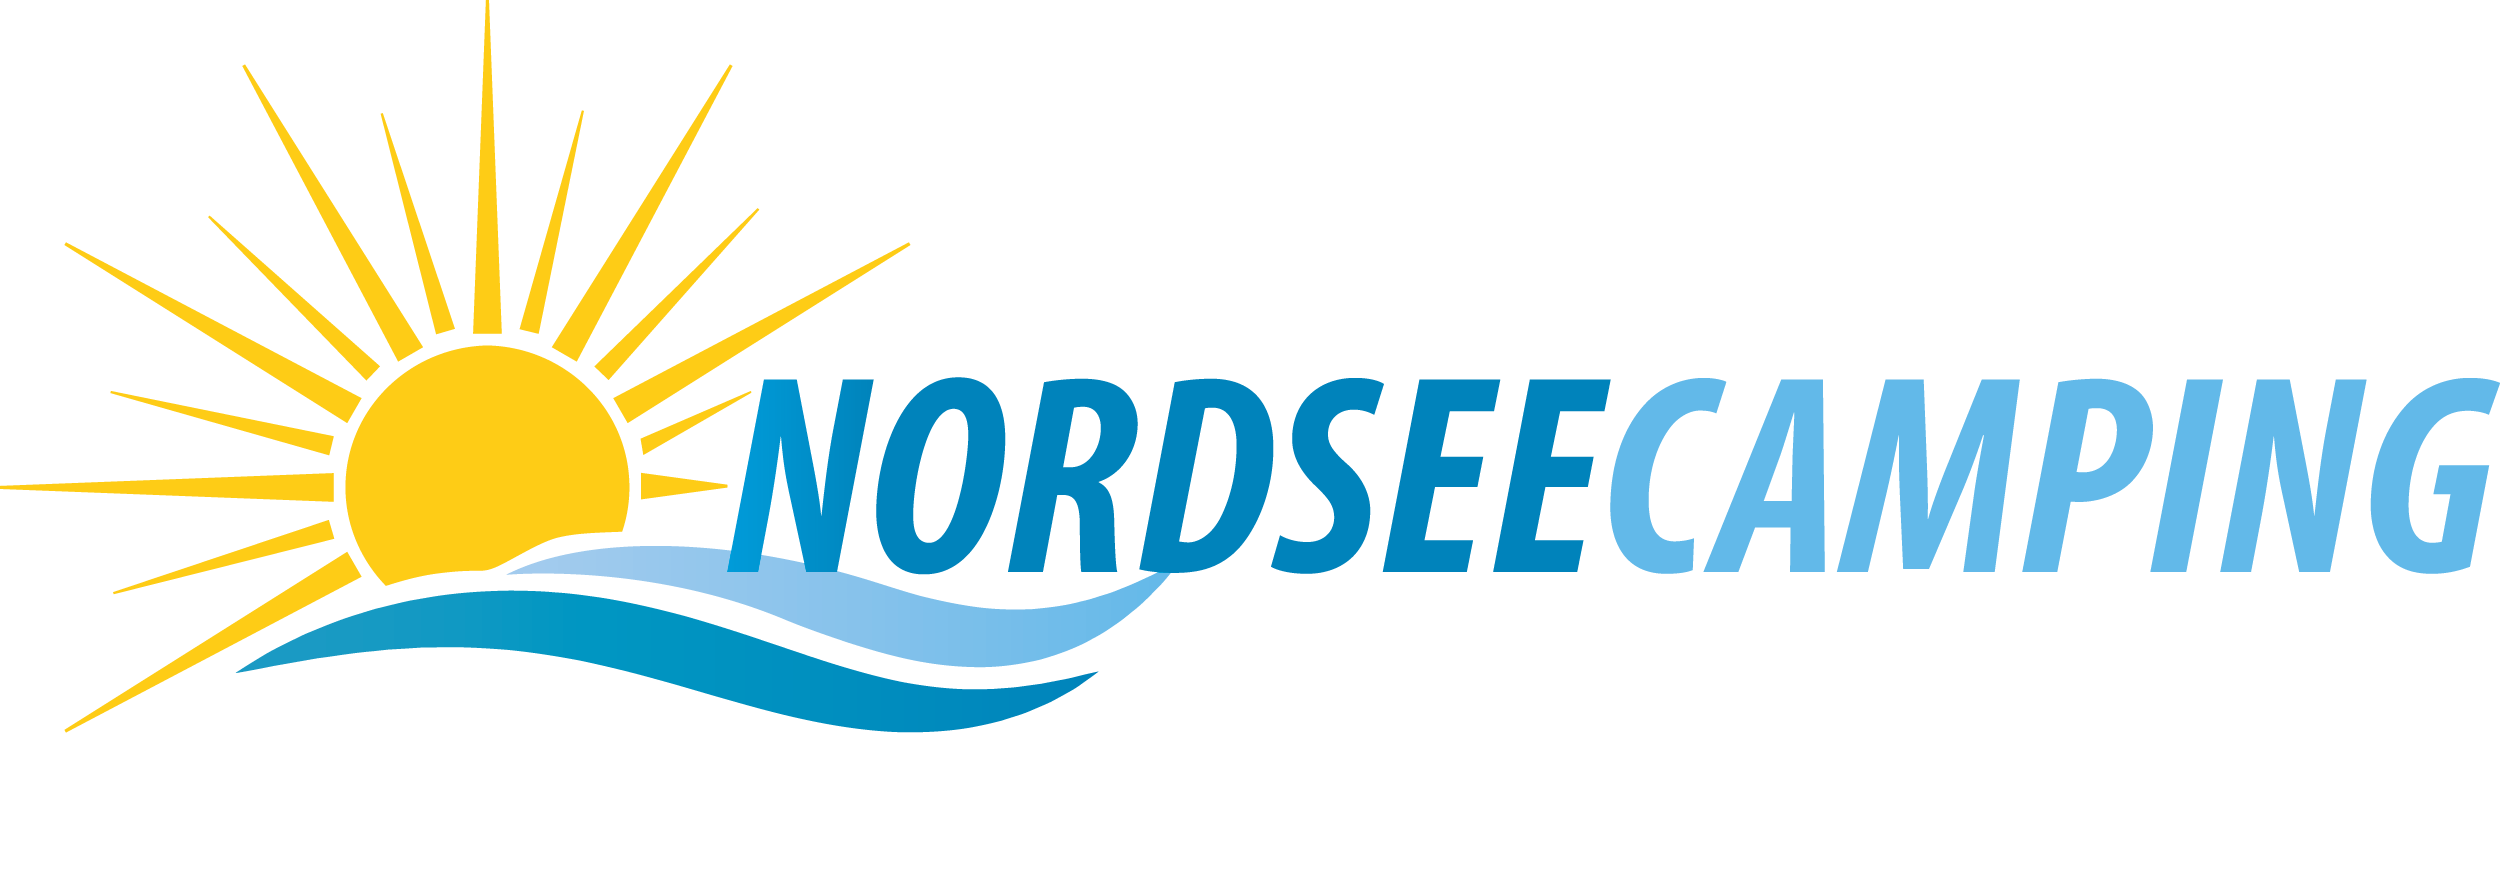 NordseeCamping In Lee